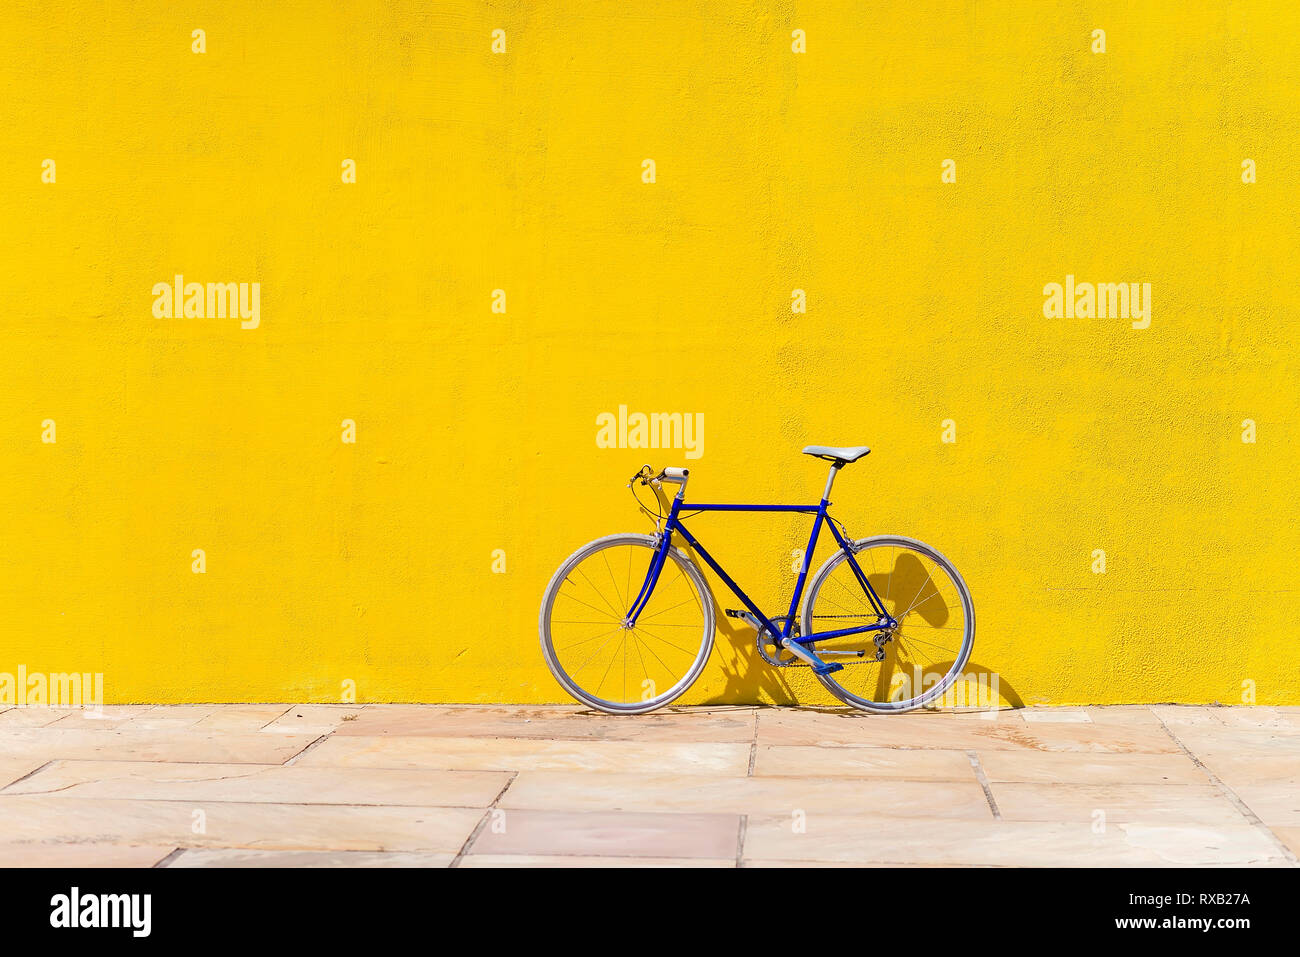 Bicicleta estacionada en la acera frente al muro durante día soleado Foto de stock